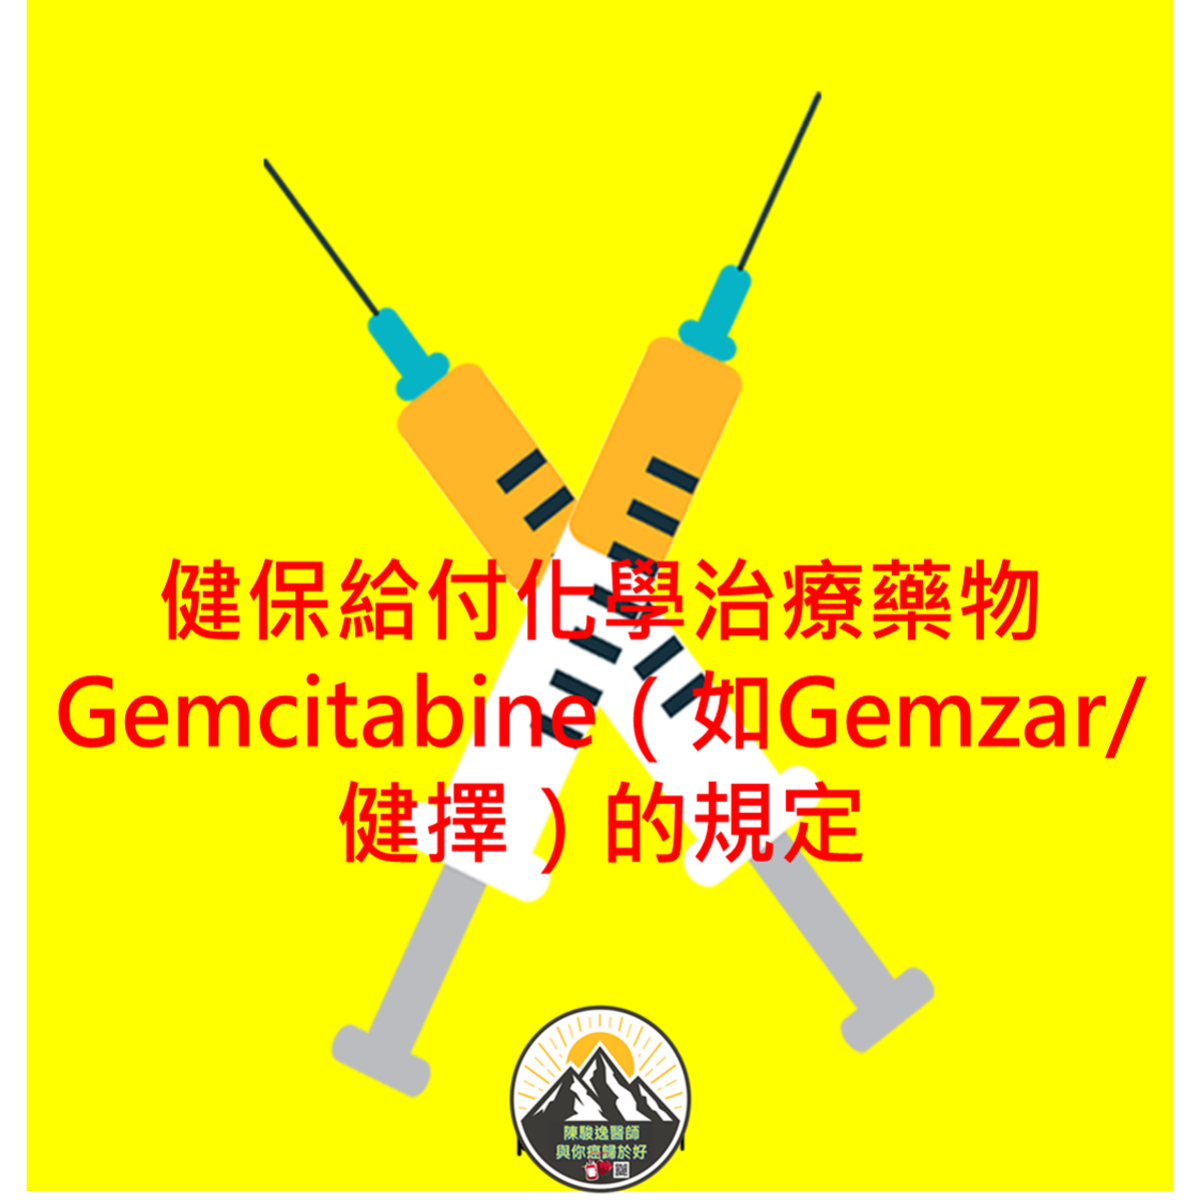 健保給付化學治療藥物Gemcitabine（如Gemzar/健擇）的規定